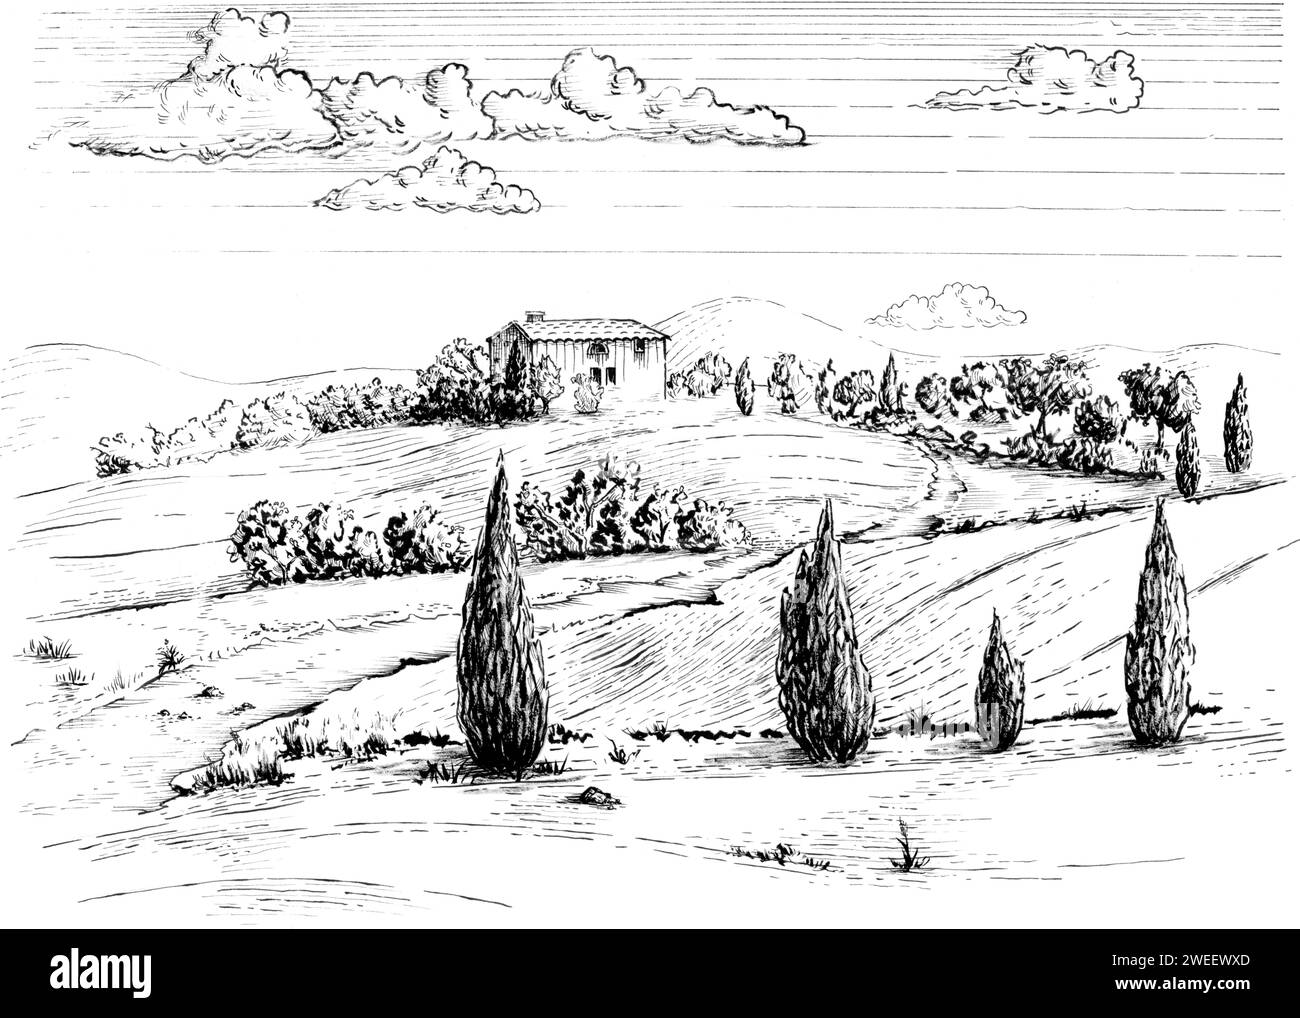 Tuschzeichnung einer typischen mediterranen ländlichen Landschaft. Traditionelle Illustration auf Papier. Stockfoto